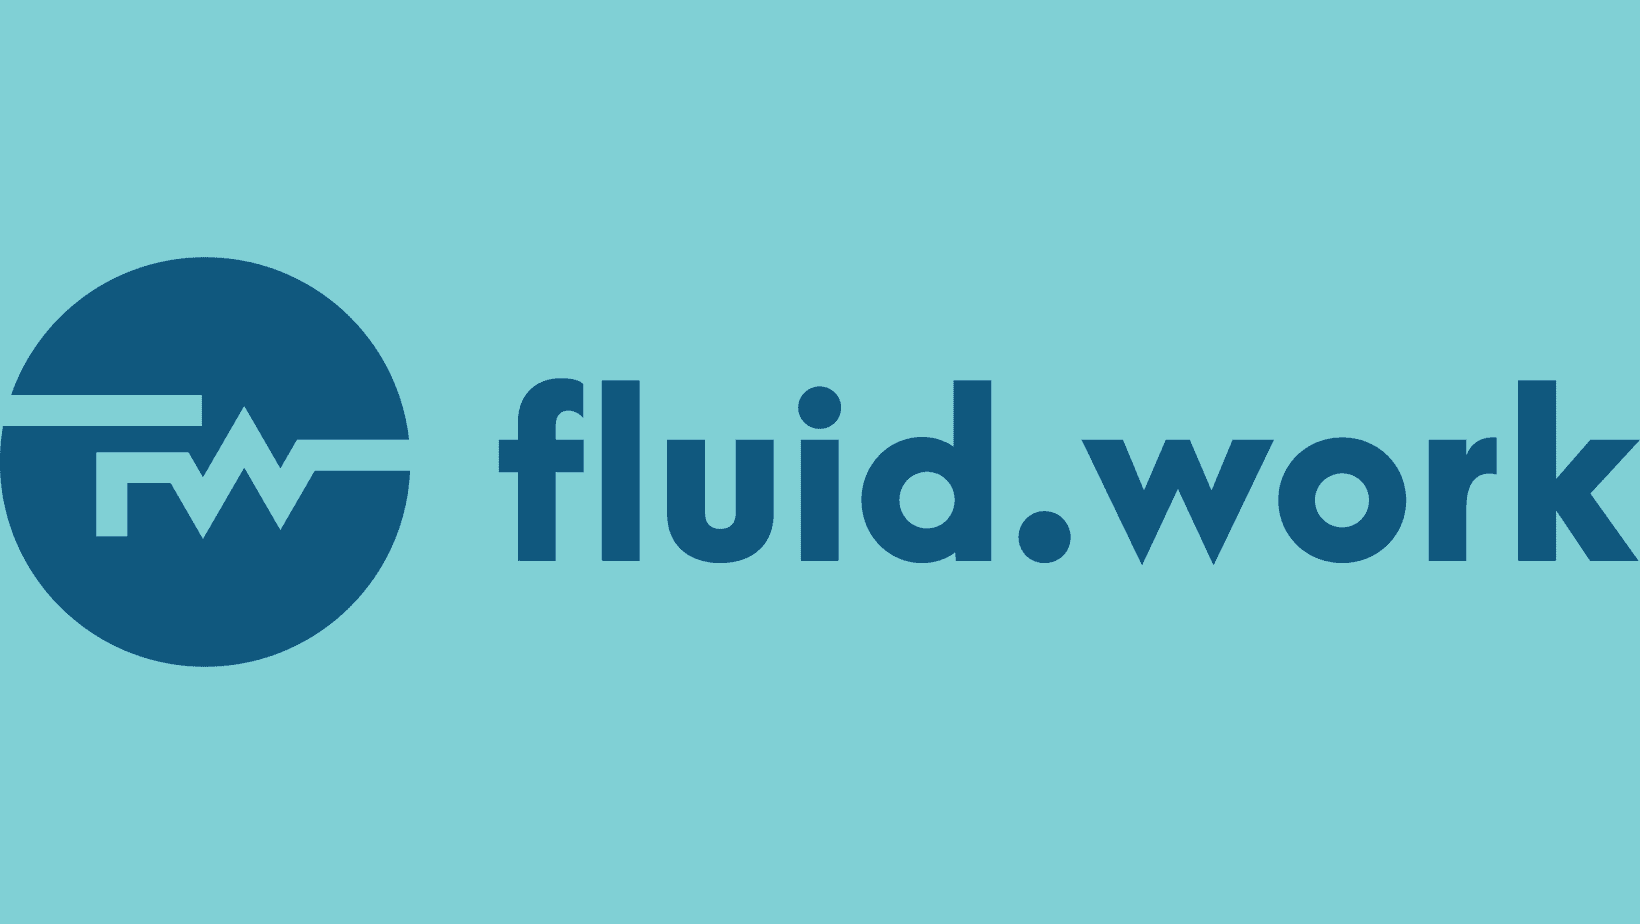 Fluid.work logo